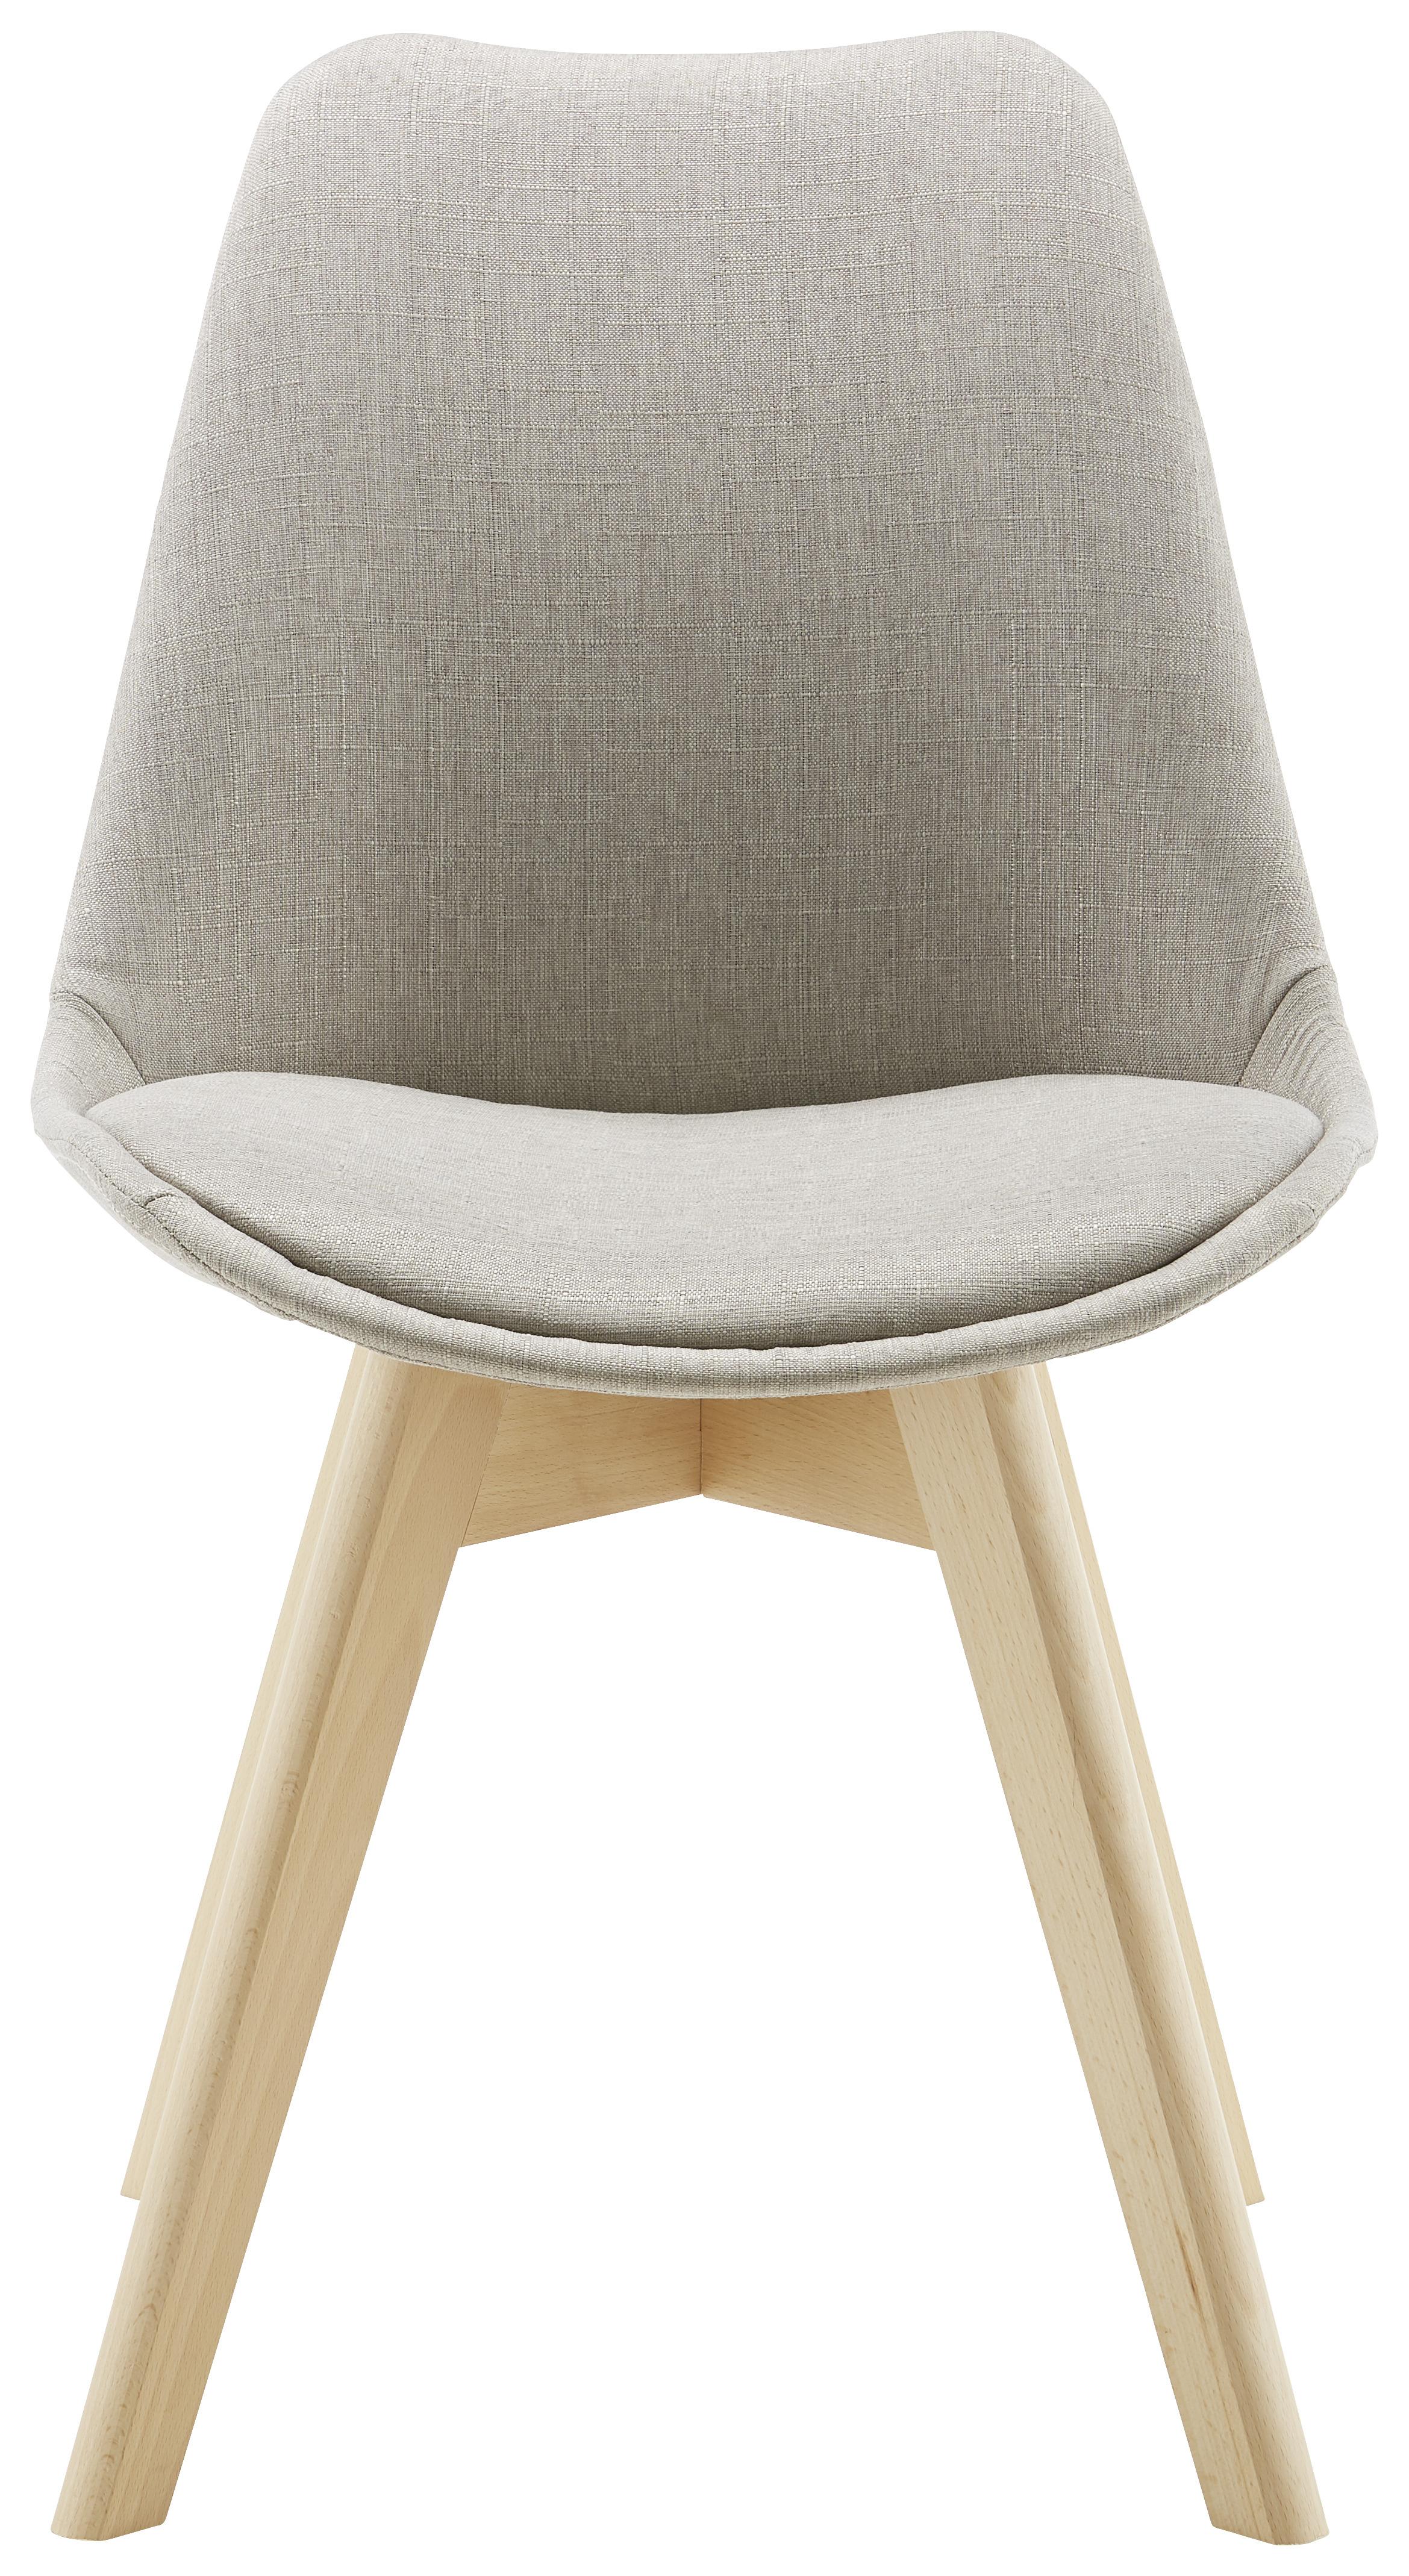 Jídelní Židle Rocksi - světle šedá/barvy buku, Moderní, dřevo/textil (48/82,5/43cm) - Bessagi Home